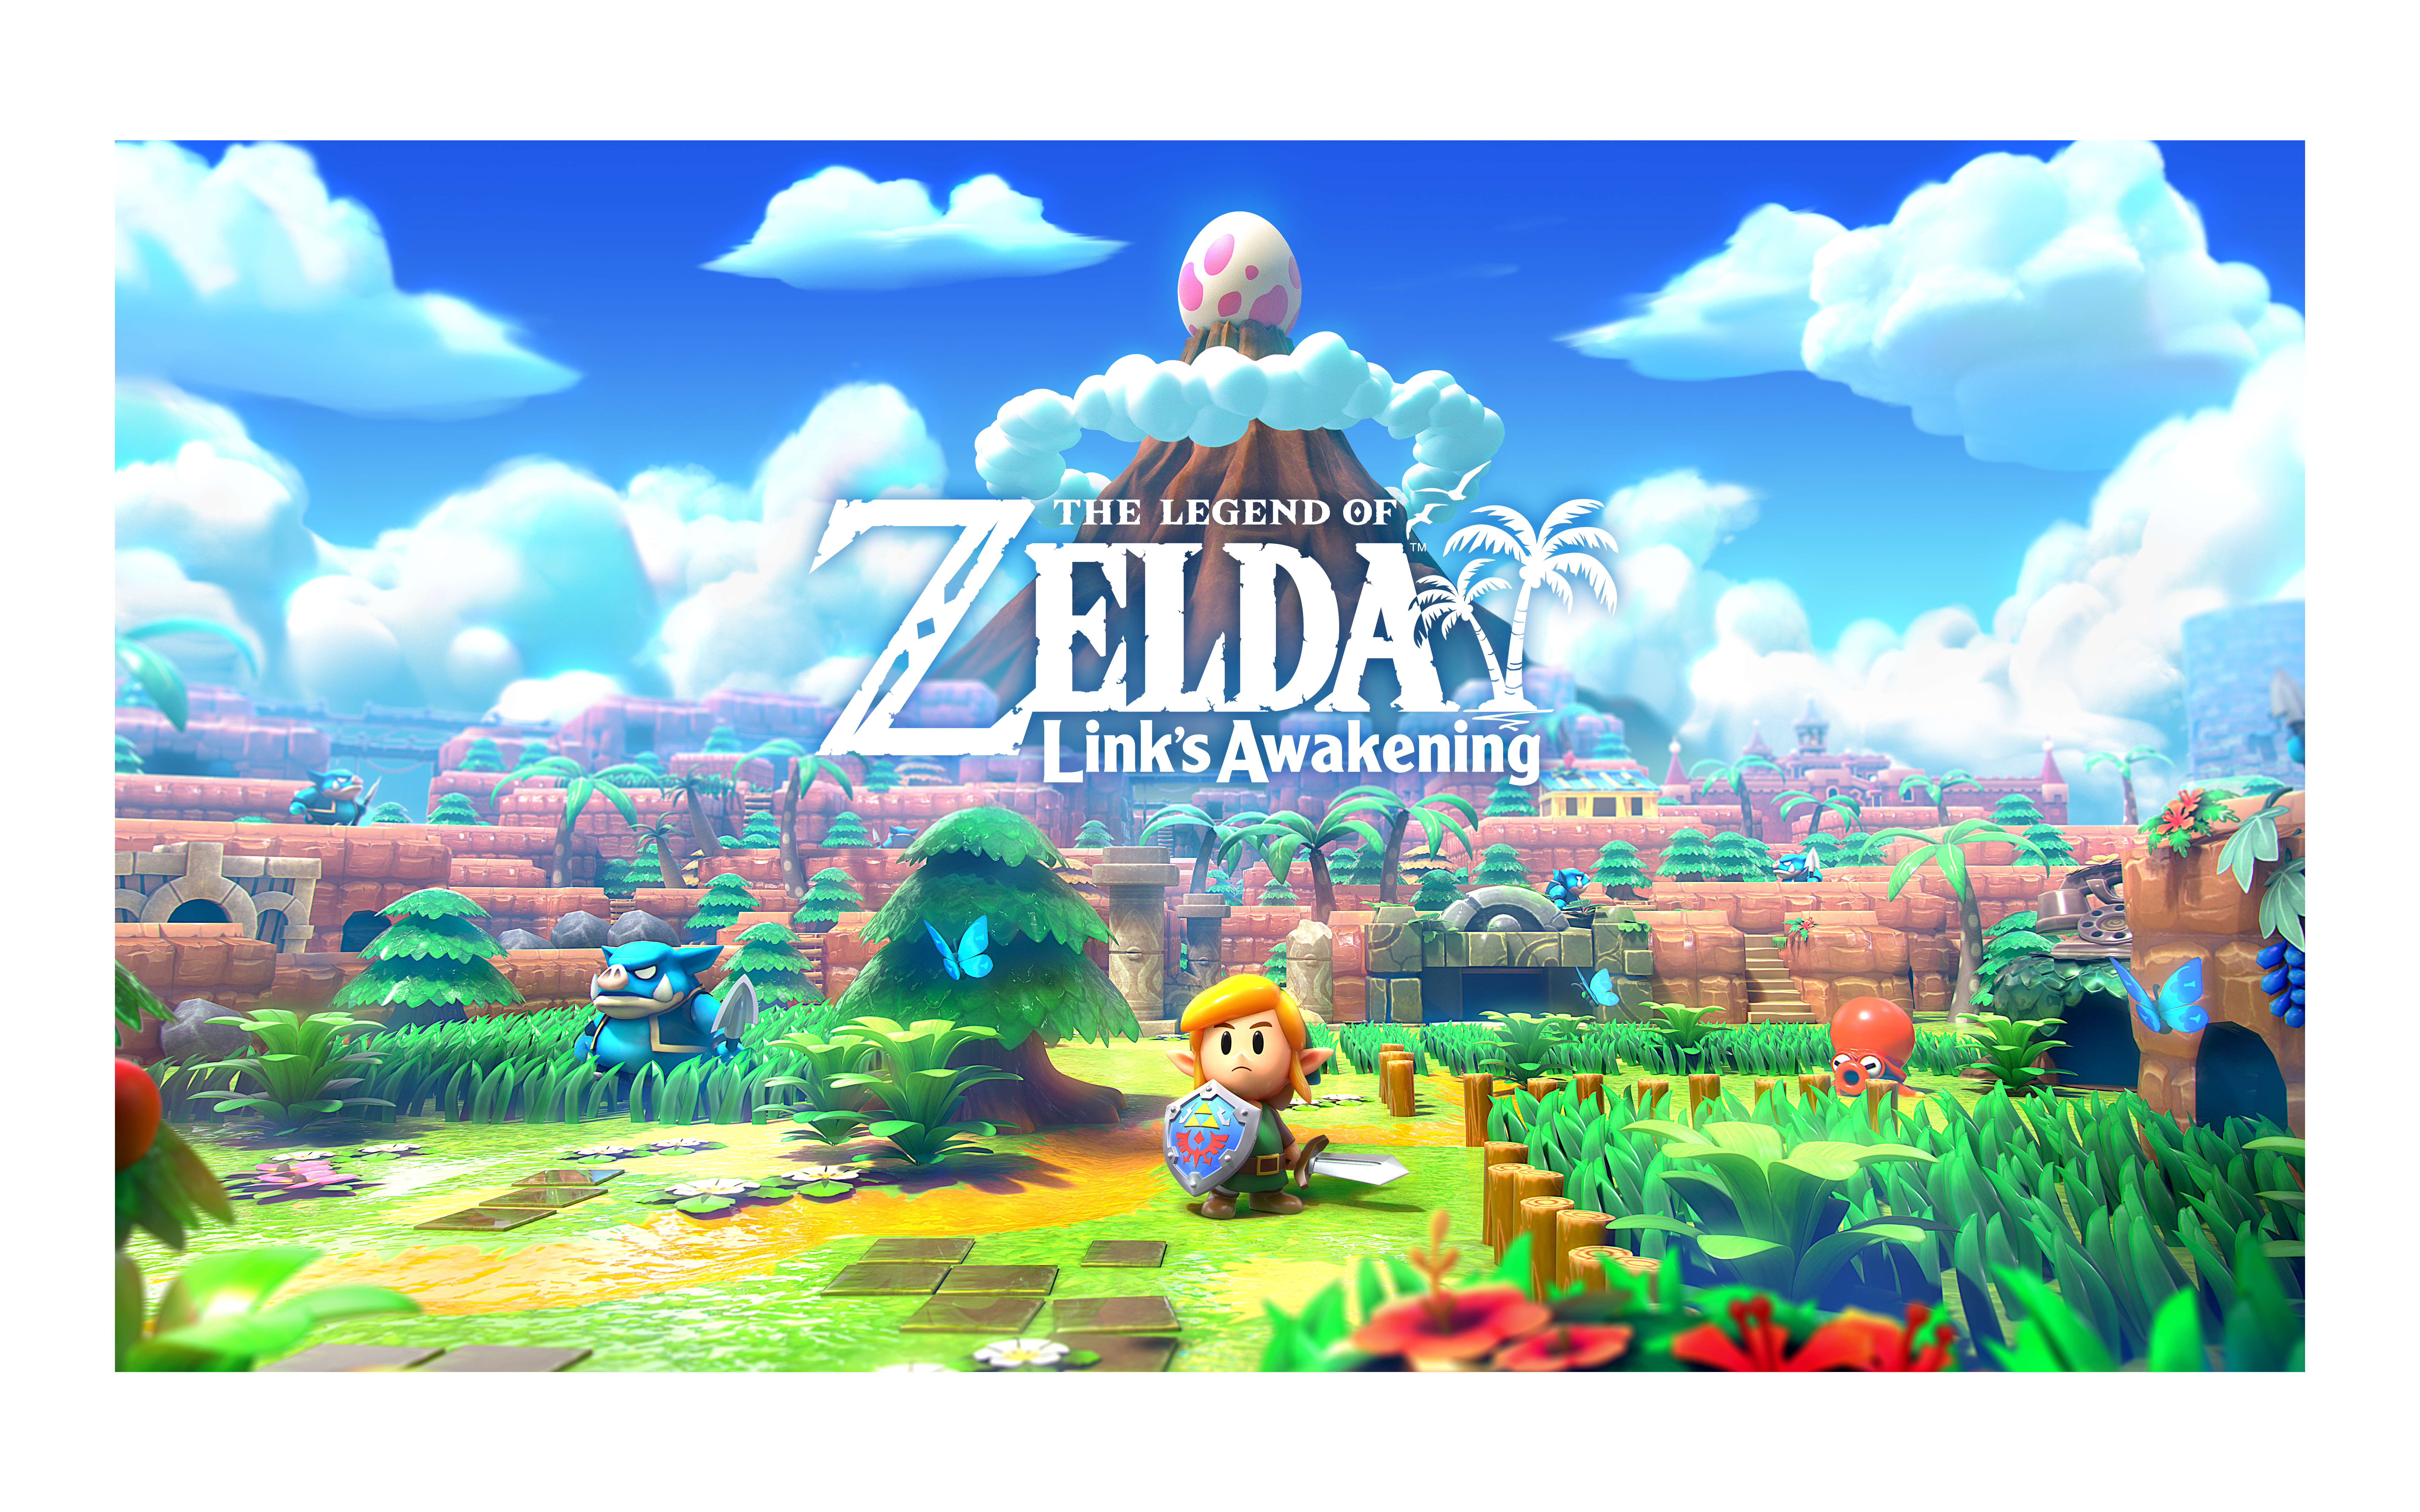 Link's Awakening Artwork